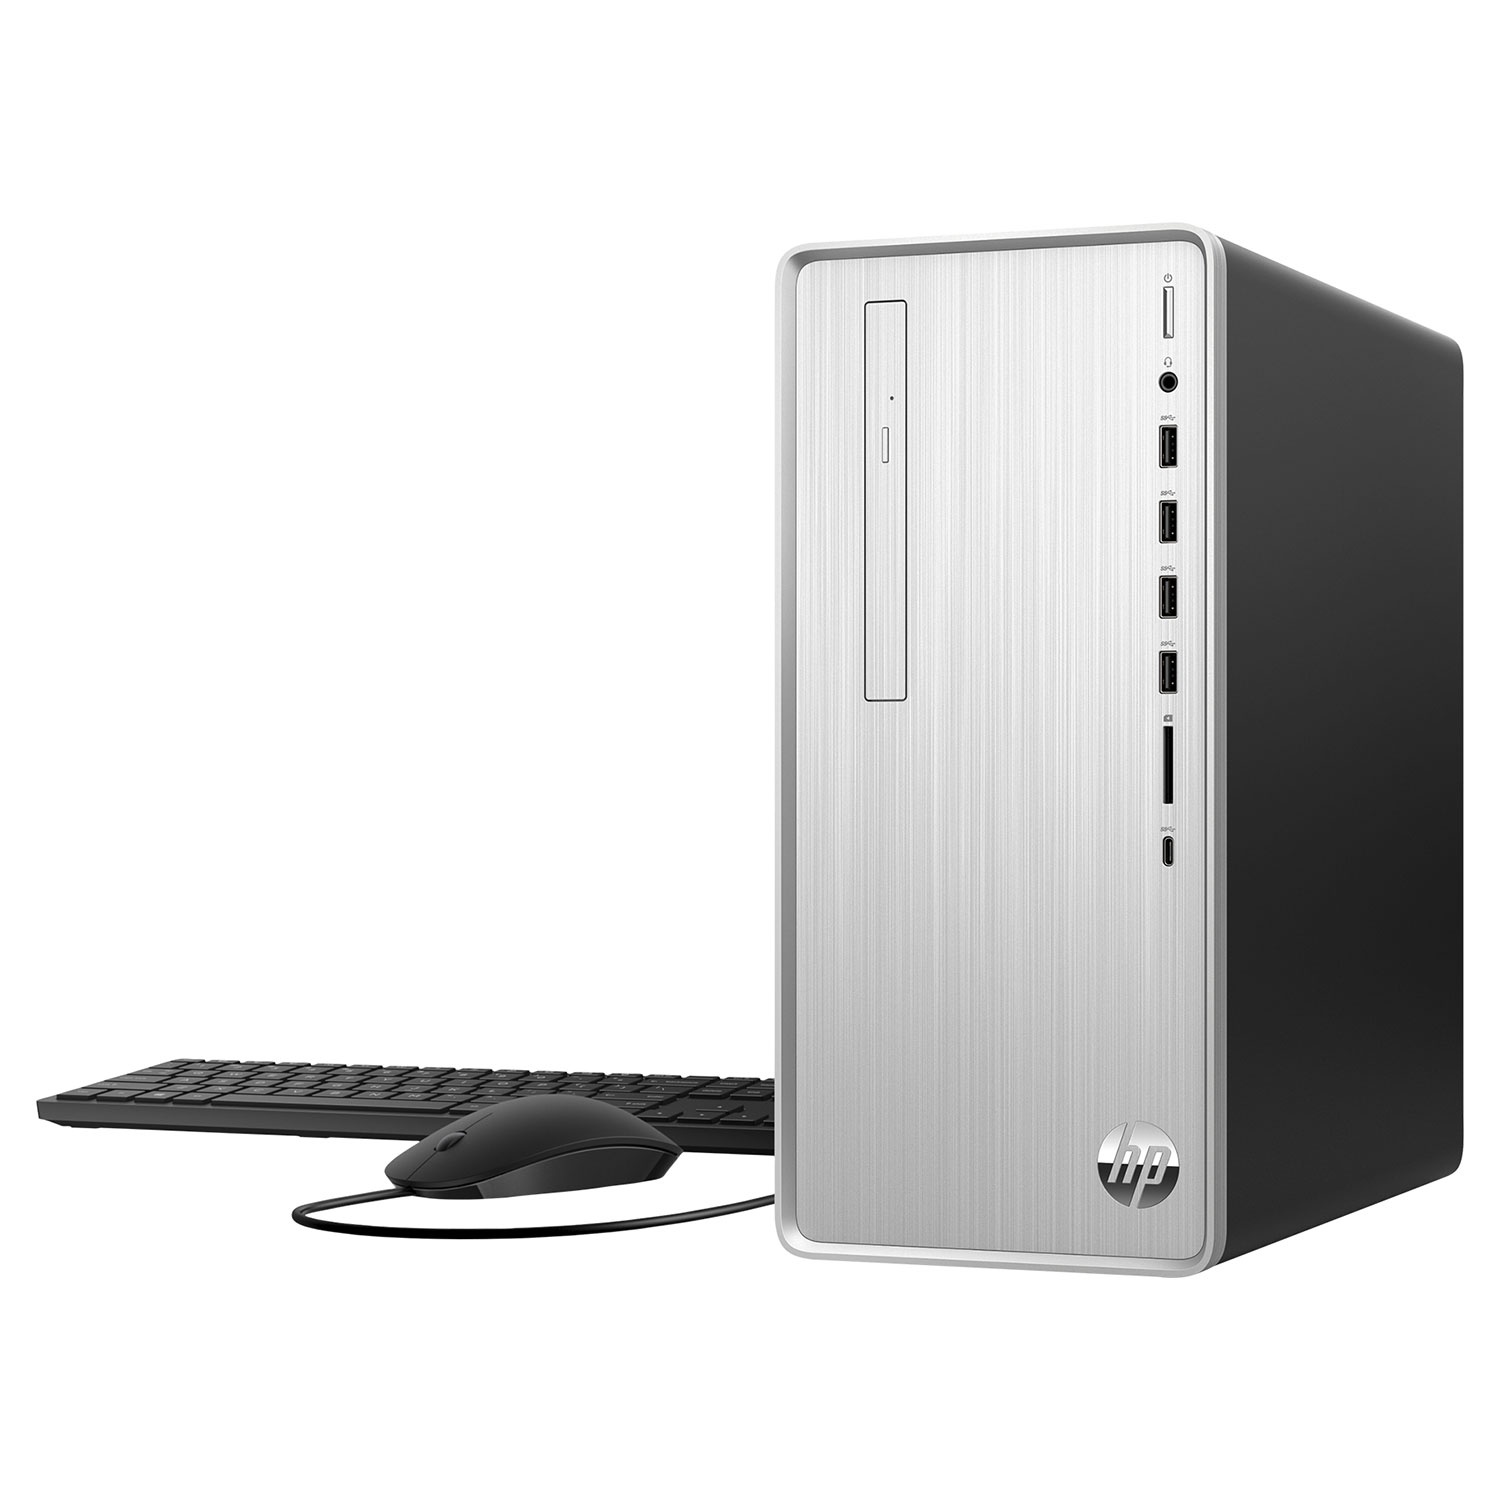 HP® Pavilion Desktop TP01- 2500ng Bundle PC